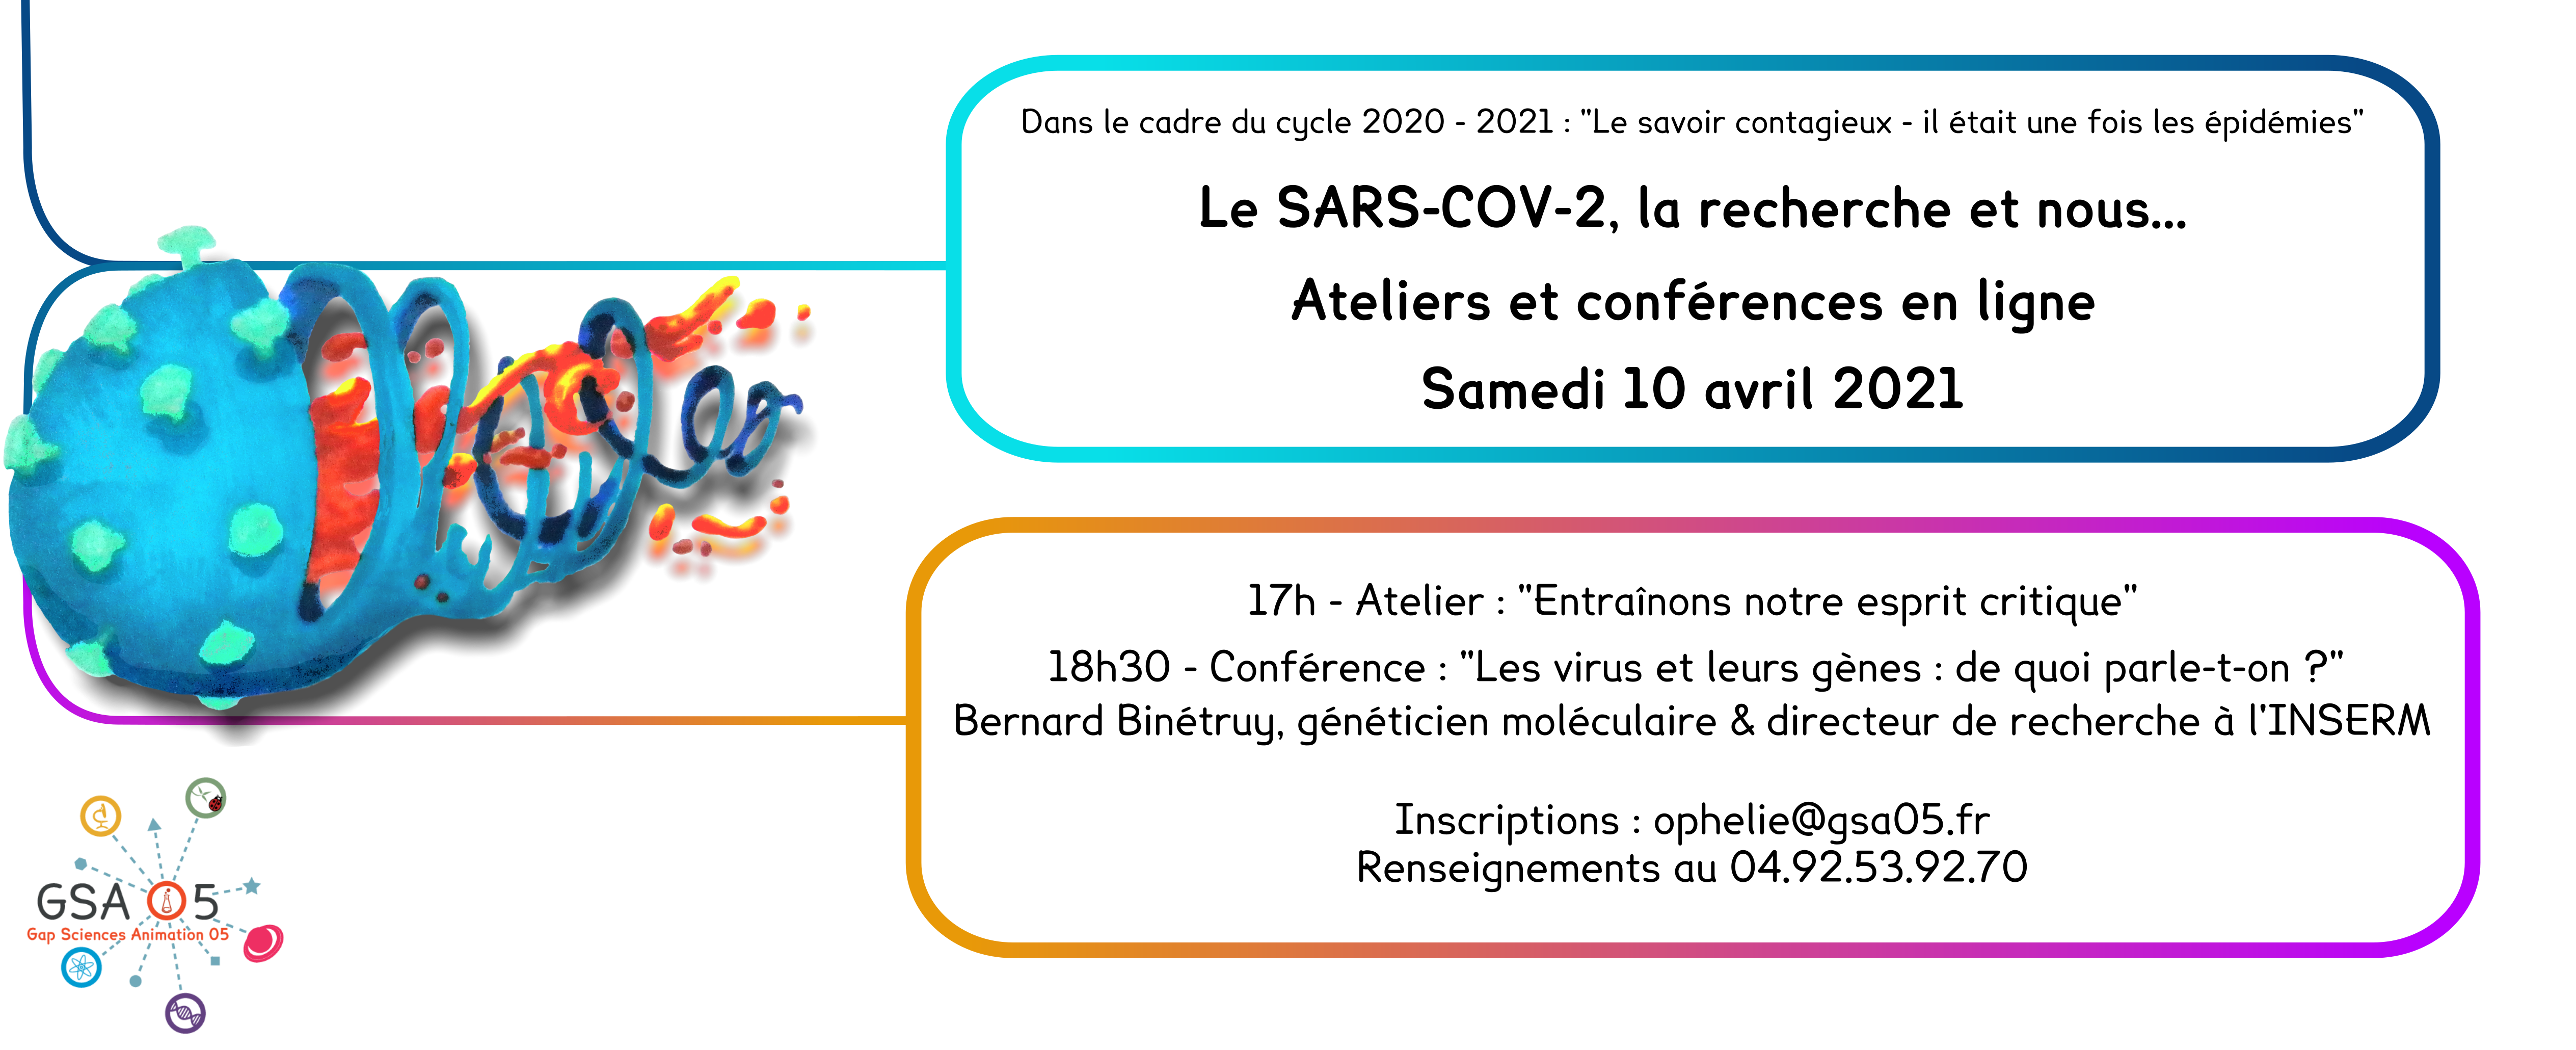 Le SARS-CoV-2, la recherche et nous - Atelier et conférence